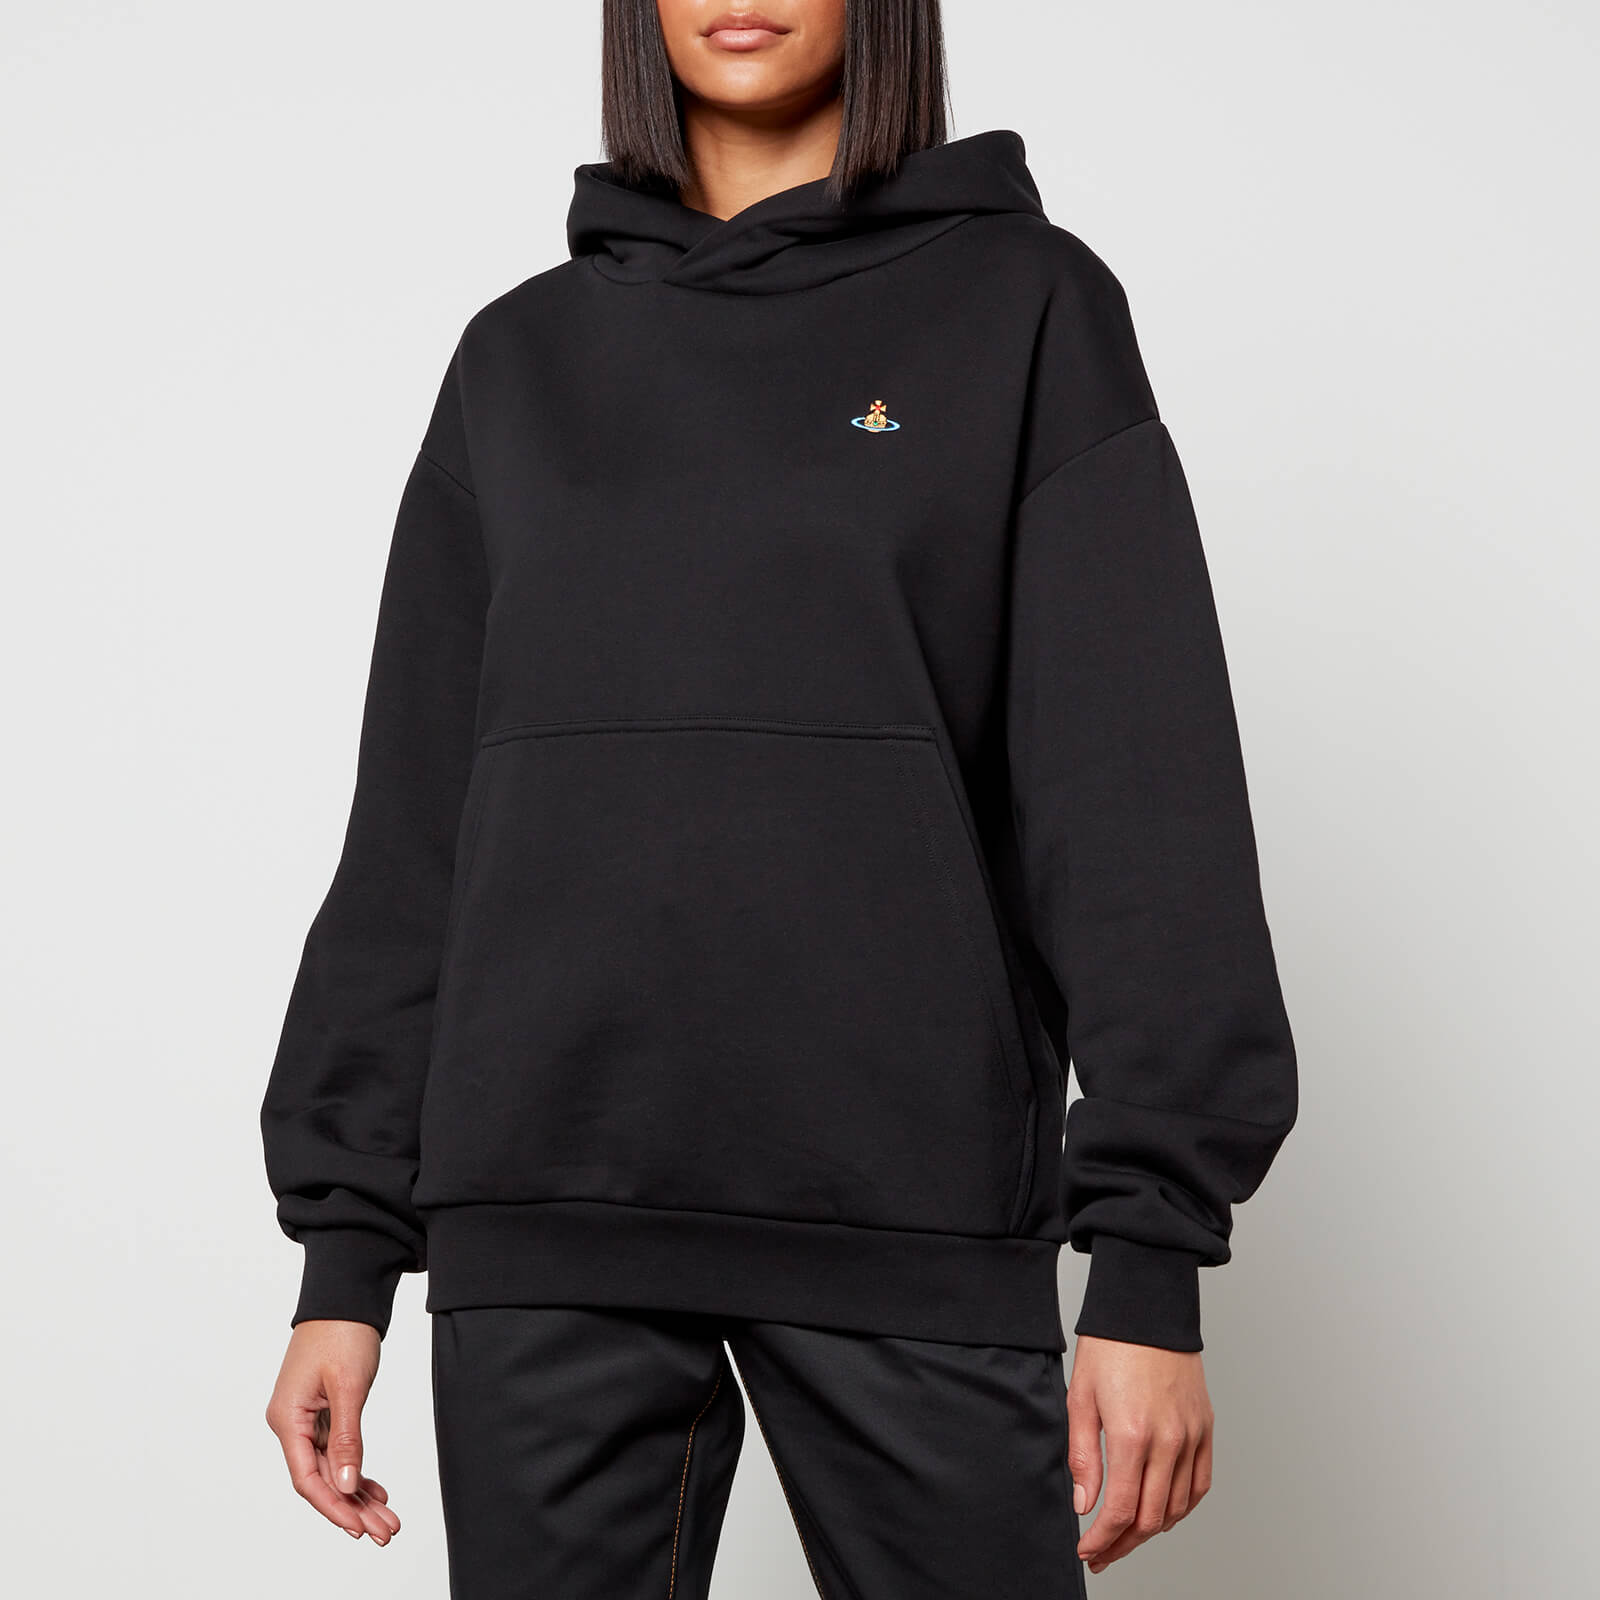 Vivienne Westwood Women's Pullover Sweatshirt Hoodie - Black - XS